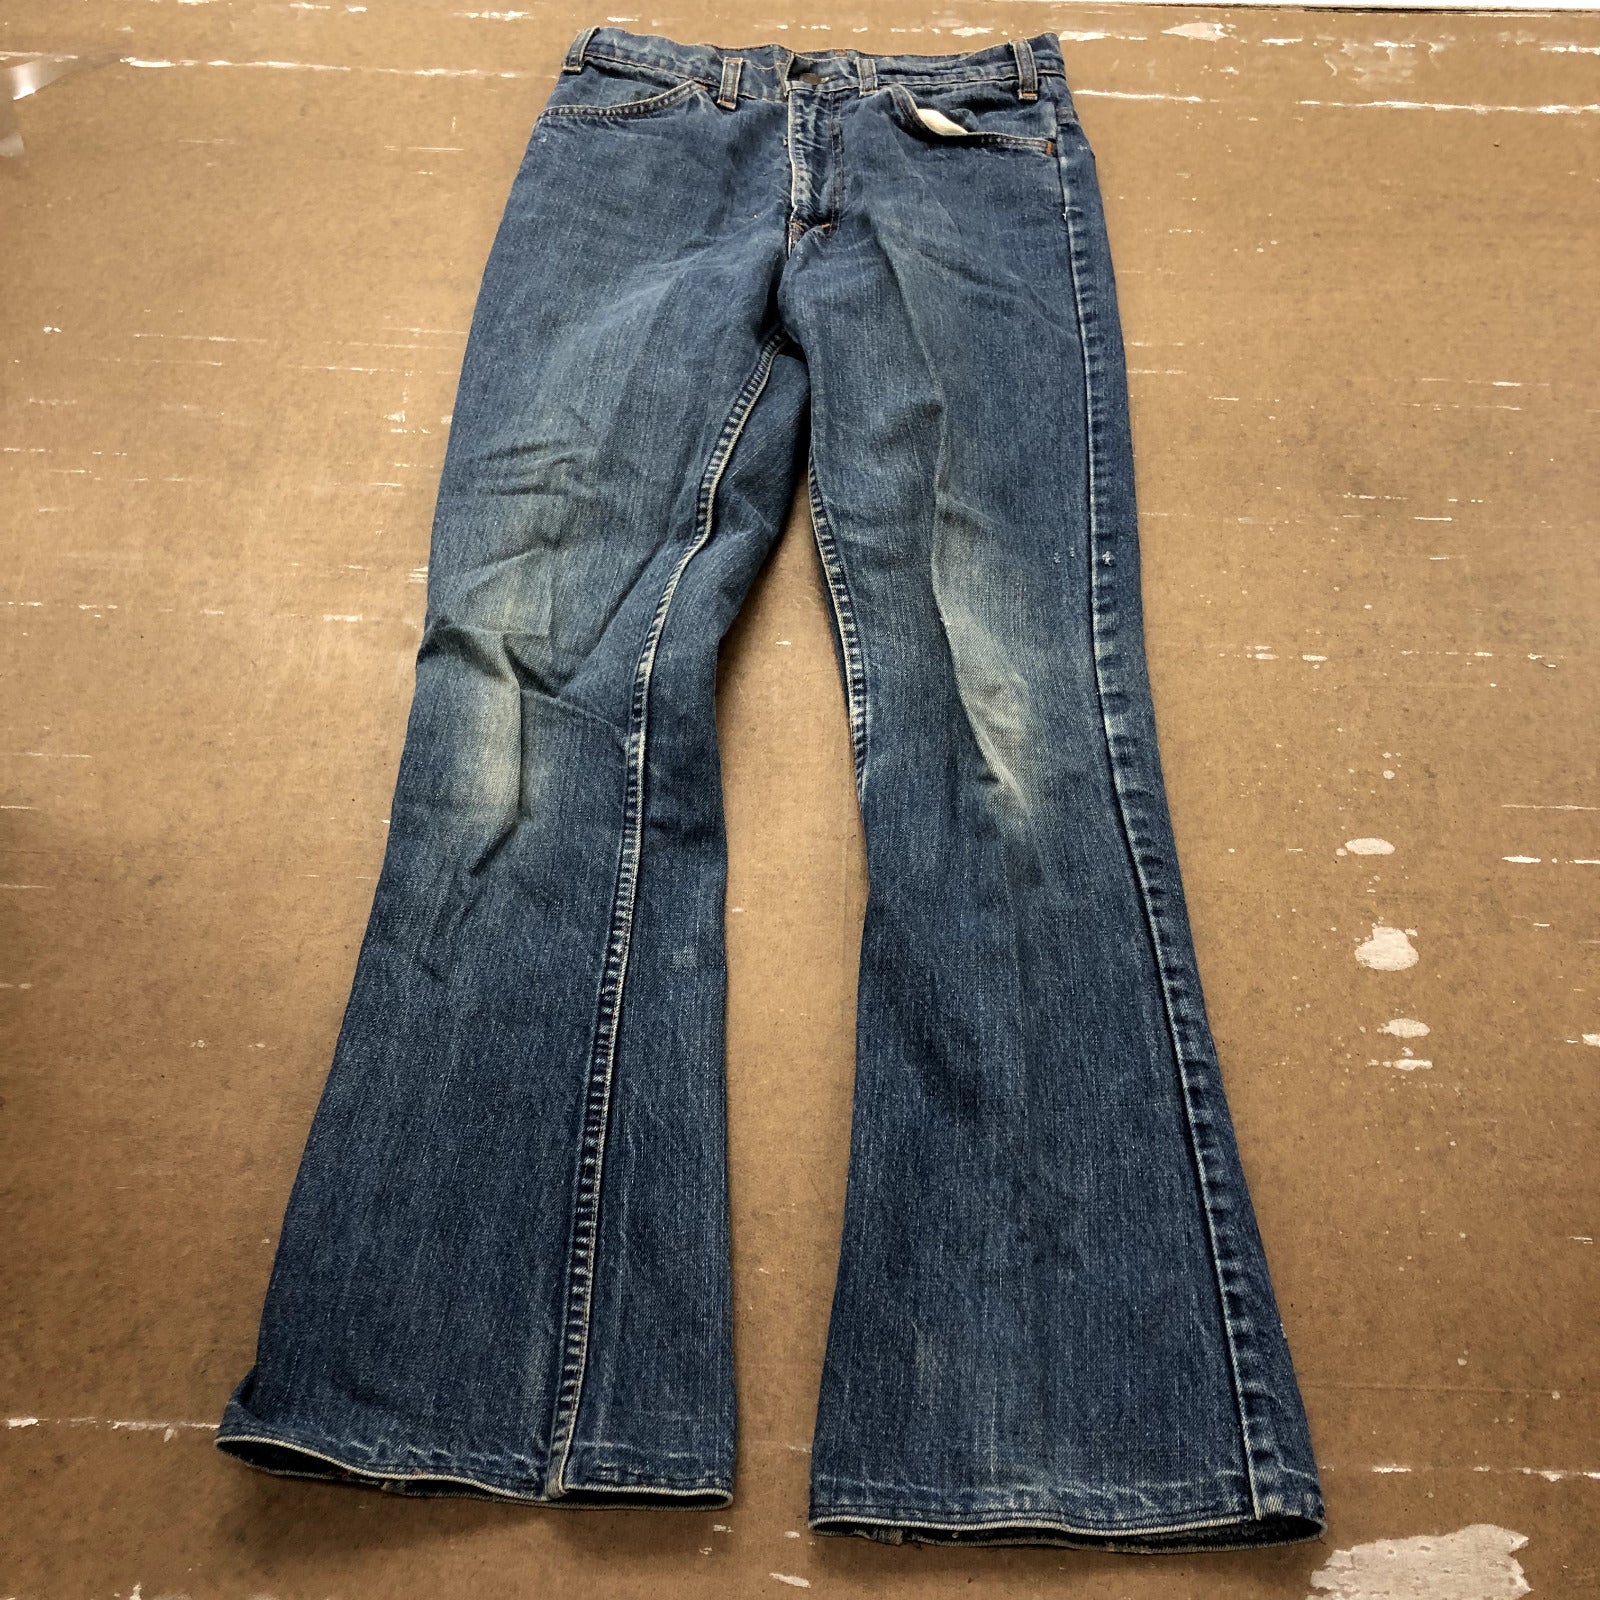 Vintage Levi's Orange Tab Blue Flared Hem Four Pocket Denim Jeans Adult Size 28